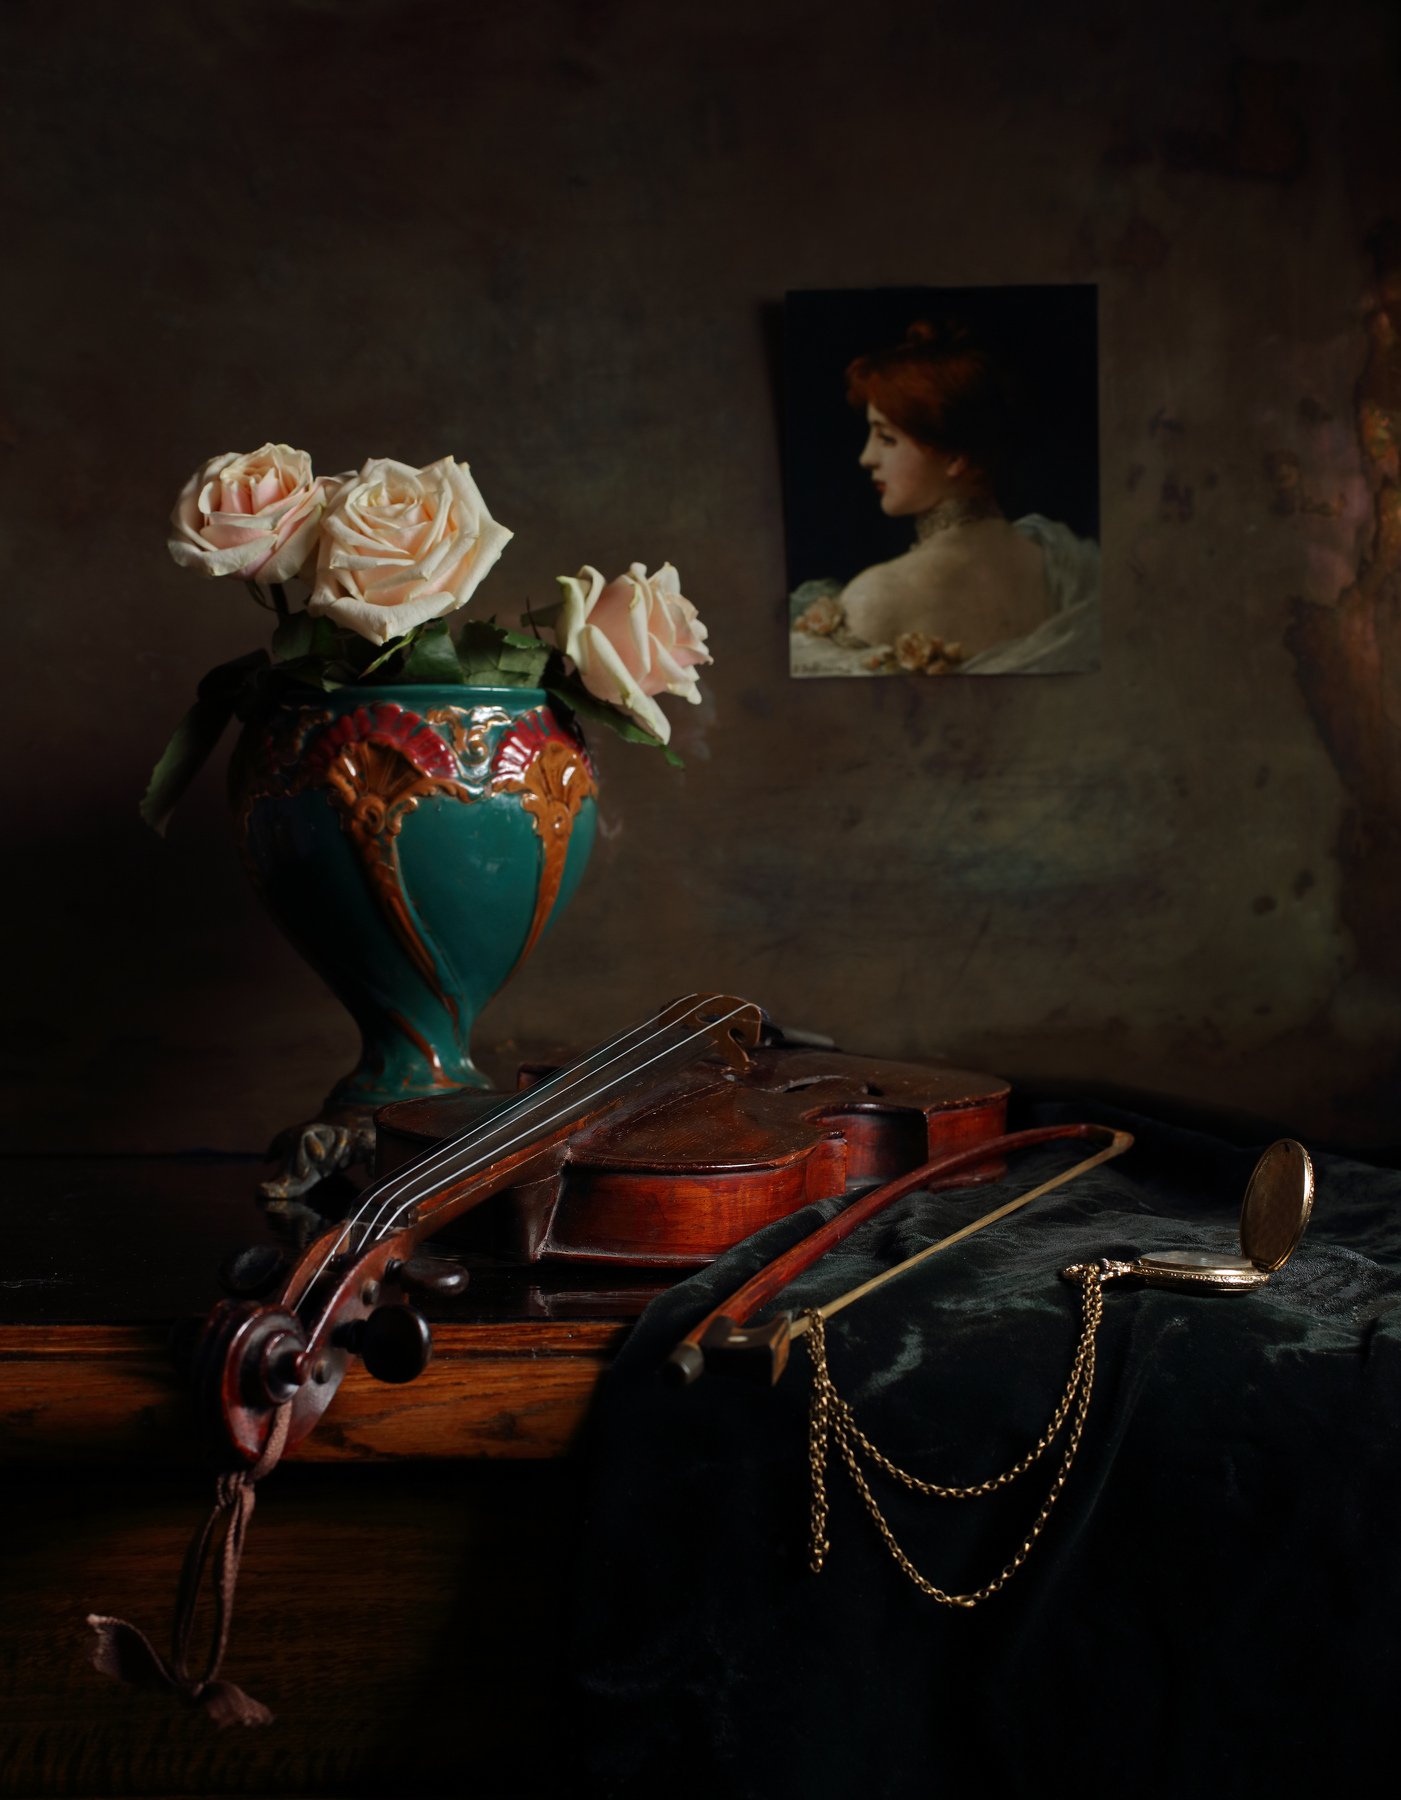 скрипка, музыка, розы, цветы, натюрморт, свет, Андрей Морозов